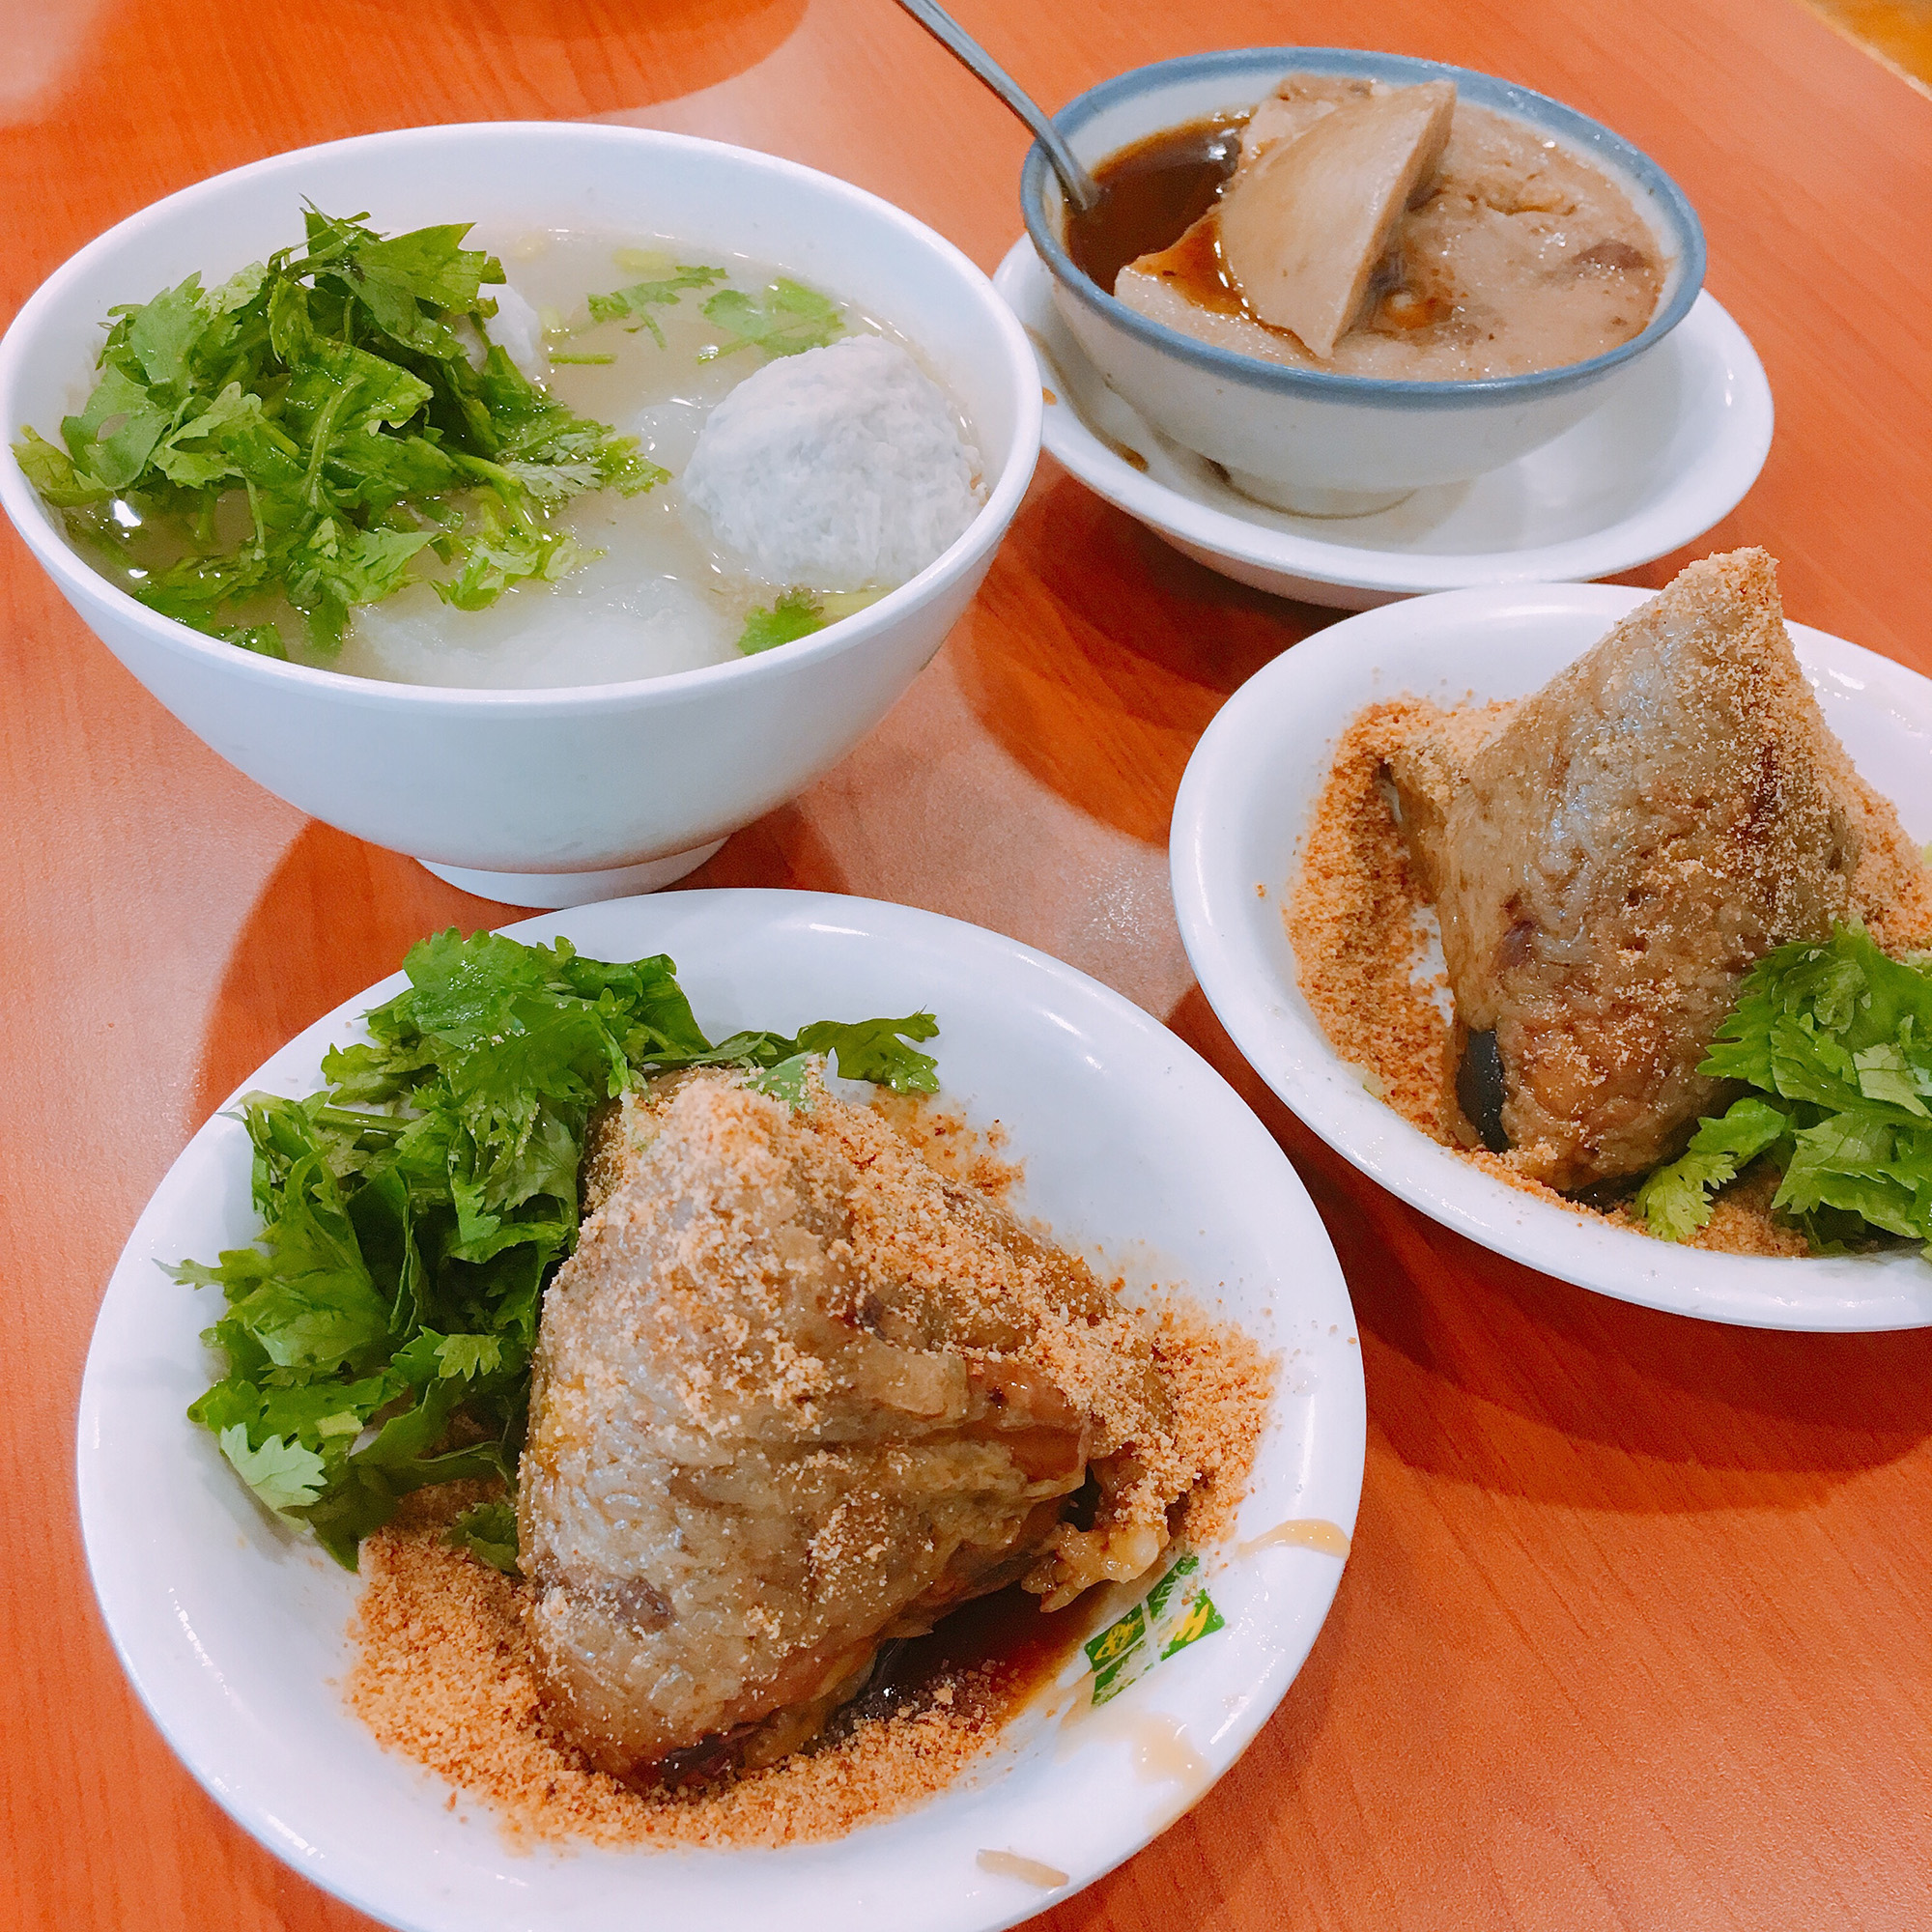 王記府城肉粽 蘿蔔魚丸湯 碗粿